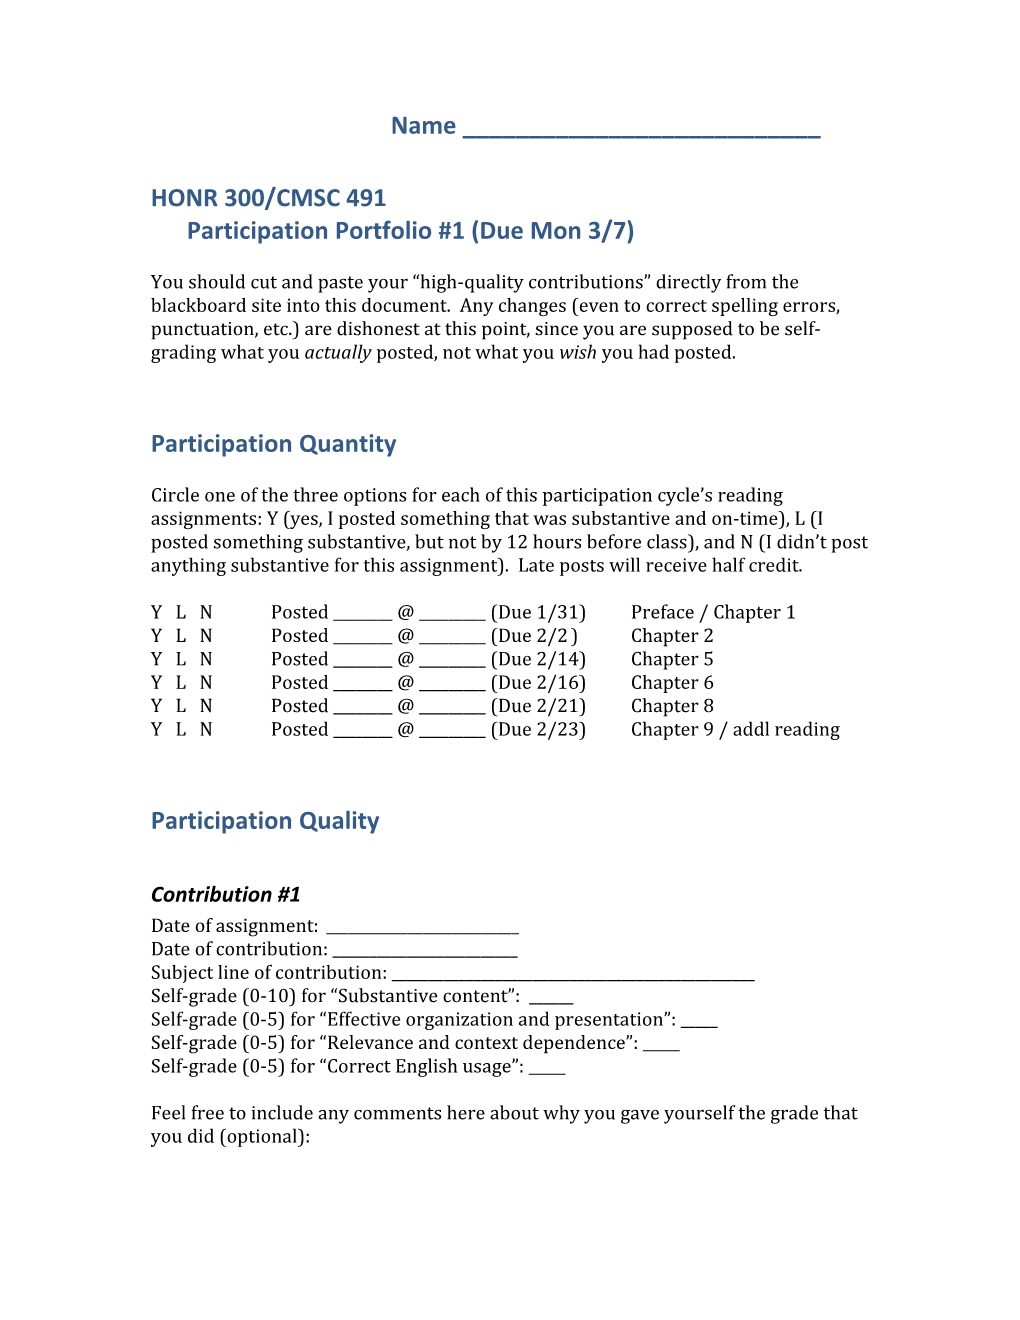 HONR 300/CMSC 491Participation Portfolio #1 (Due Mon 3/7)